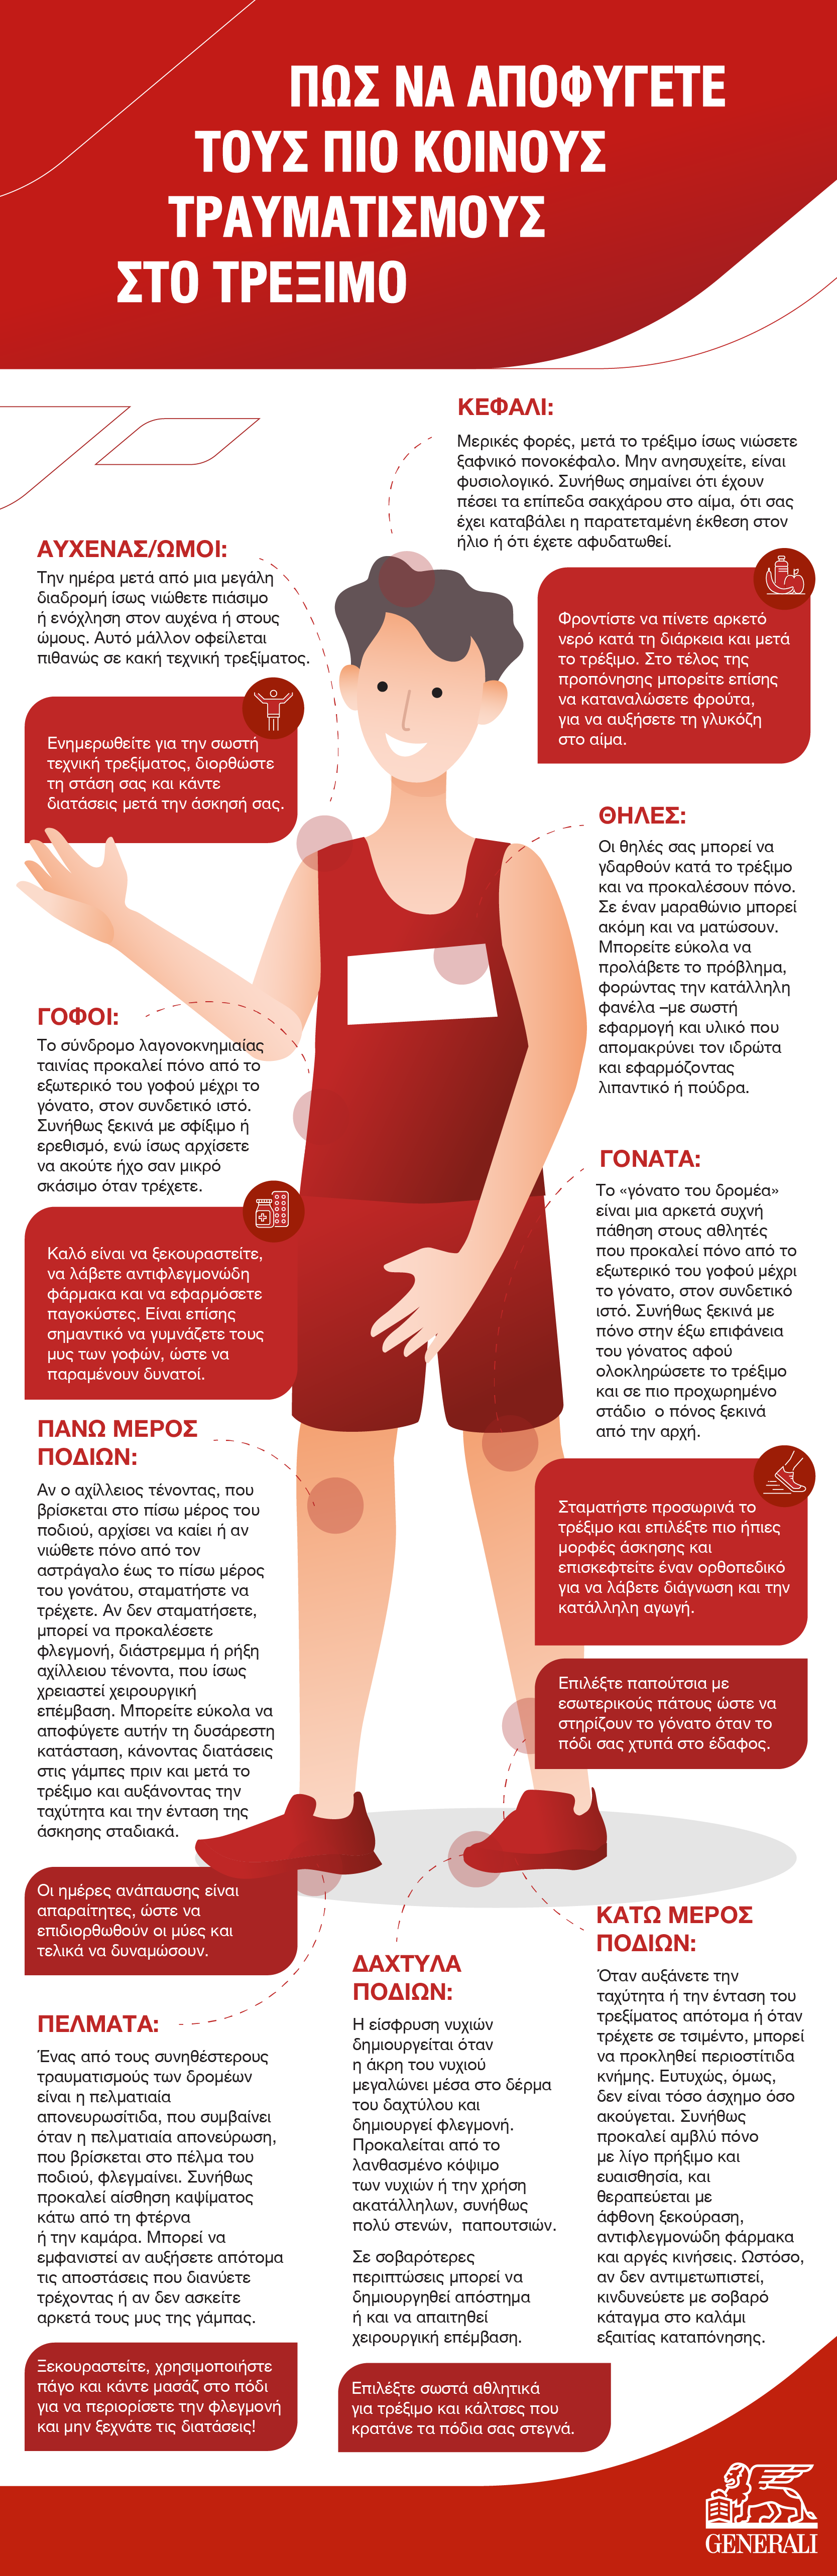 Generali_Running Injuries_Infographic_25.05.22.jpg